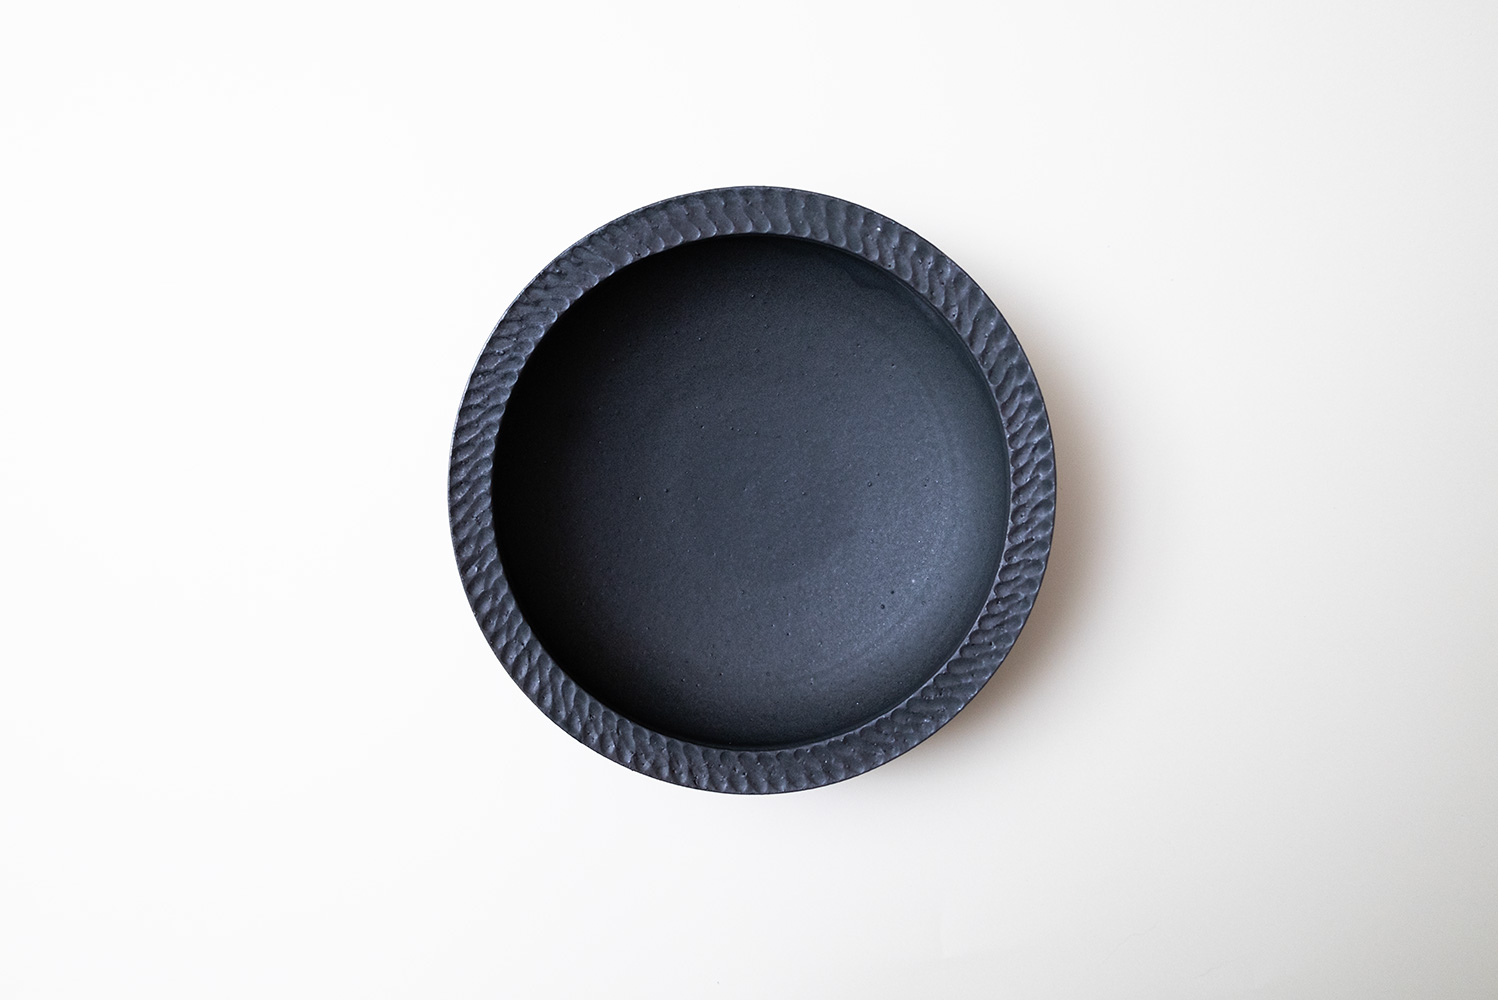 カレー皿 黒